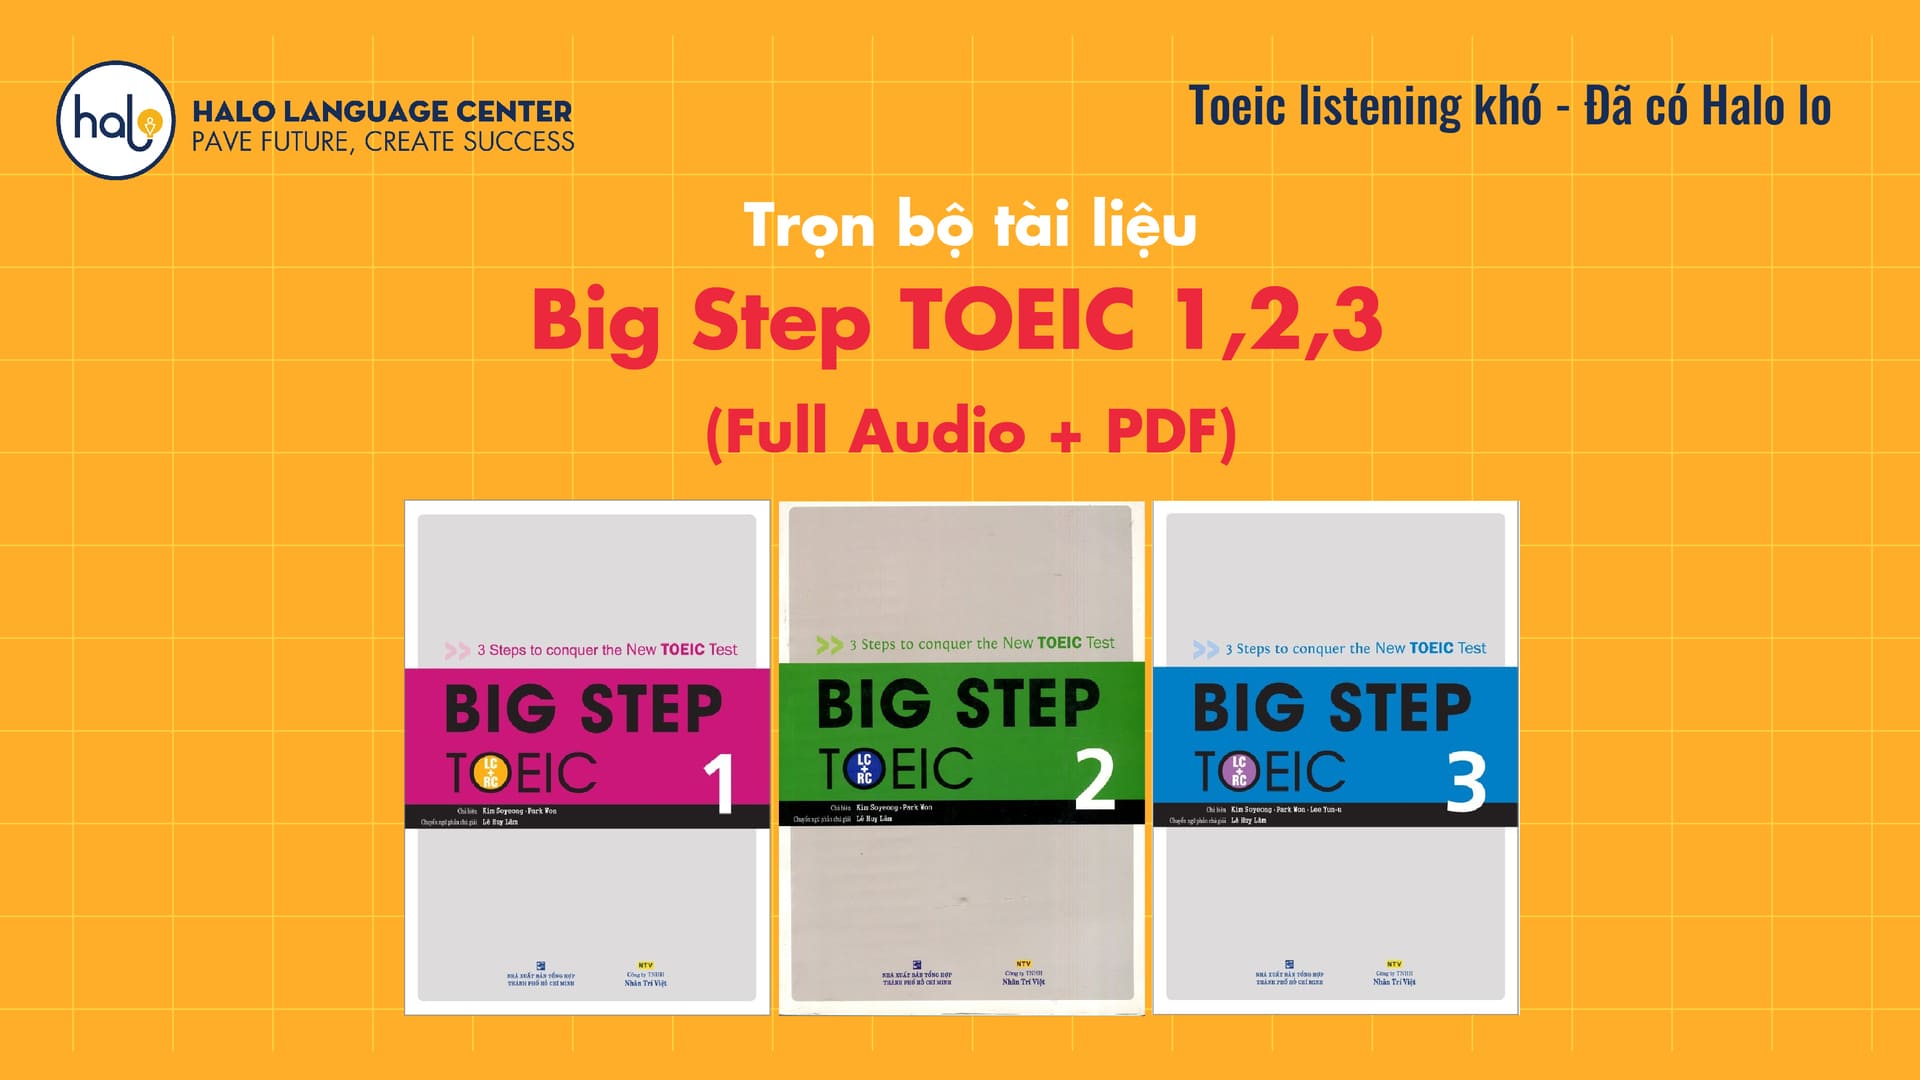 Trọn Bộ Tài Liệu Big Step TOEIC 1,2,3 (Full Audio + PDF) Mới Nhất